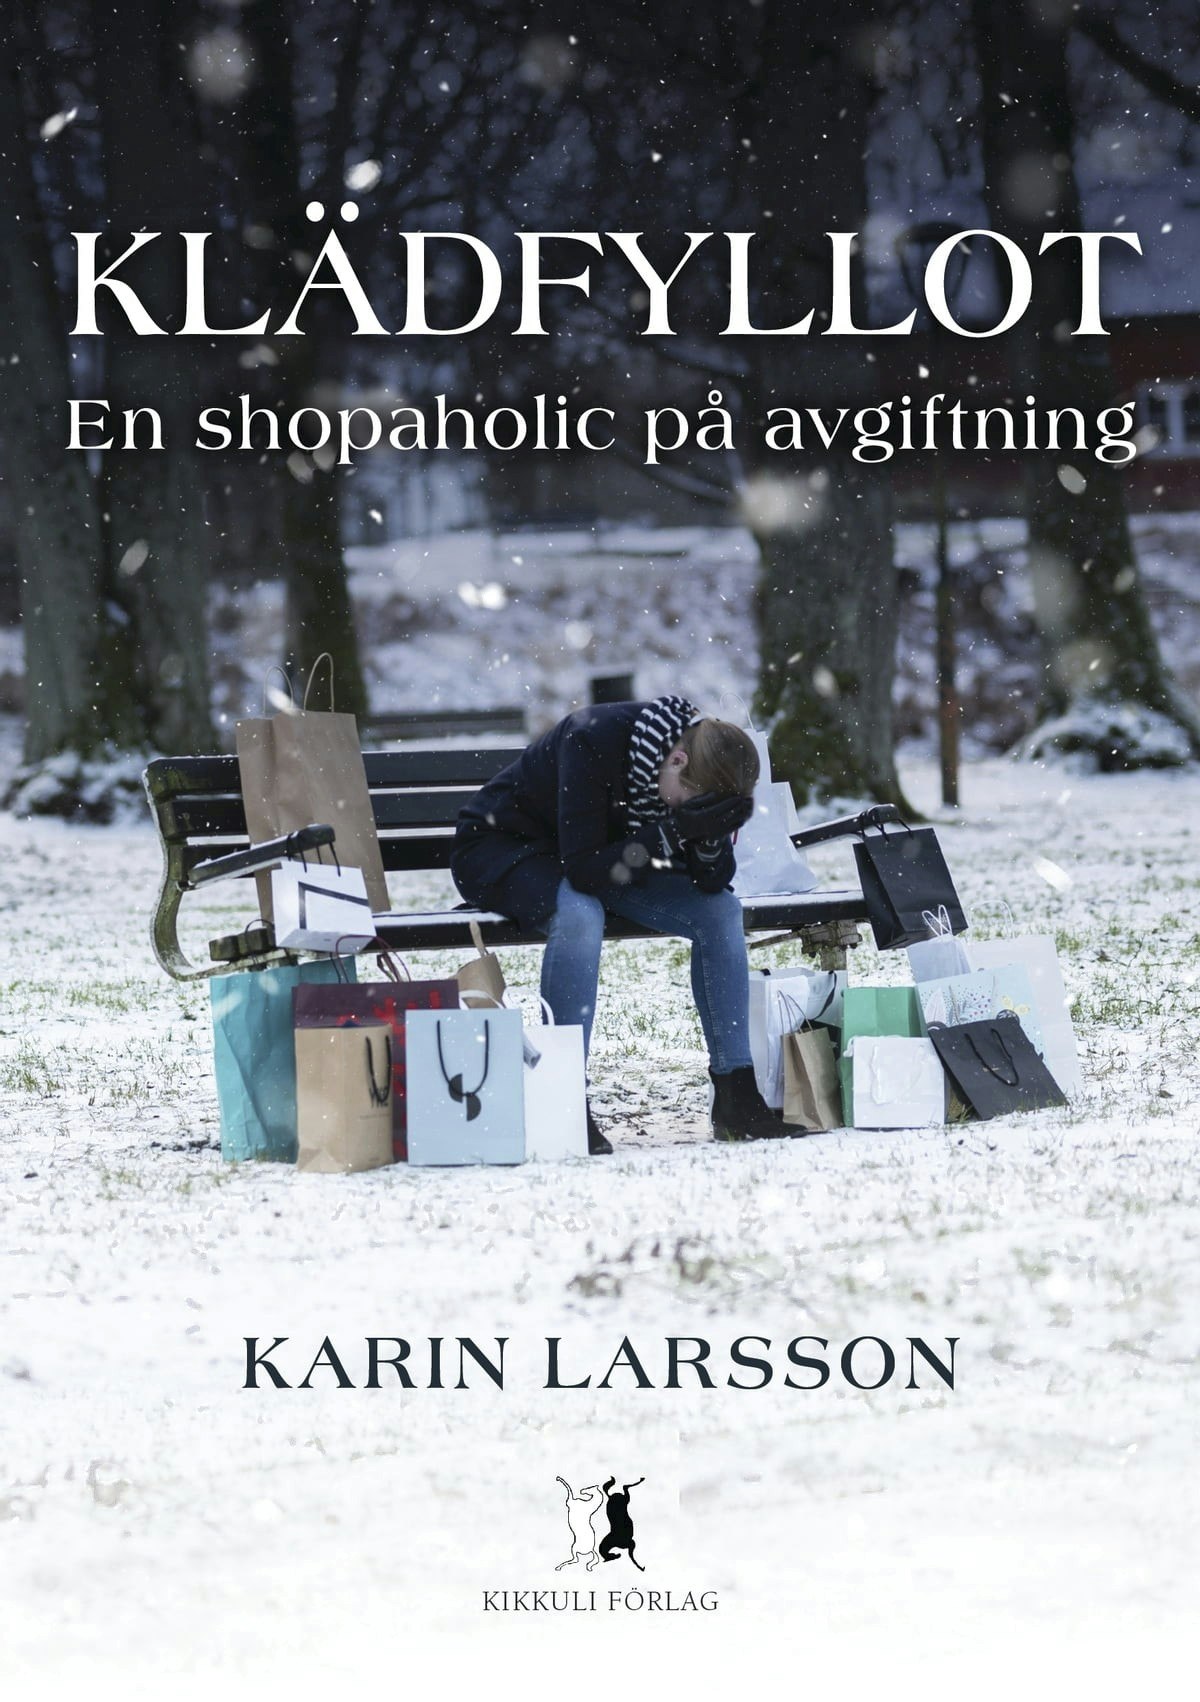 Karin Larssons bog.